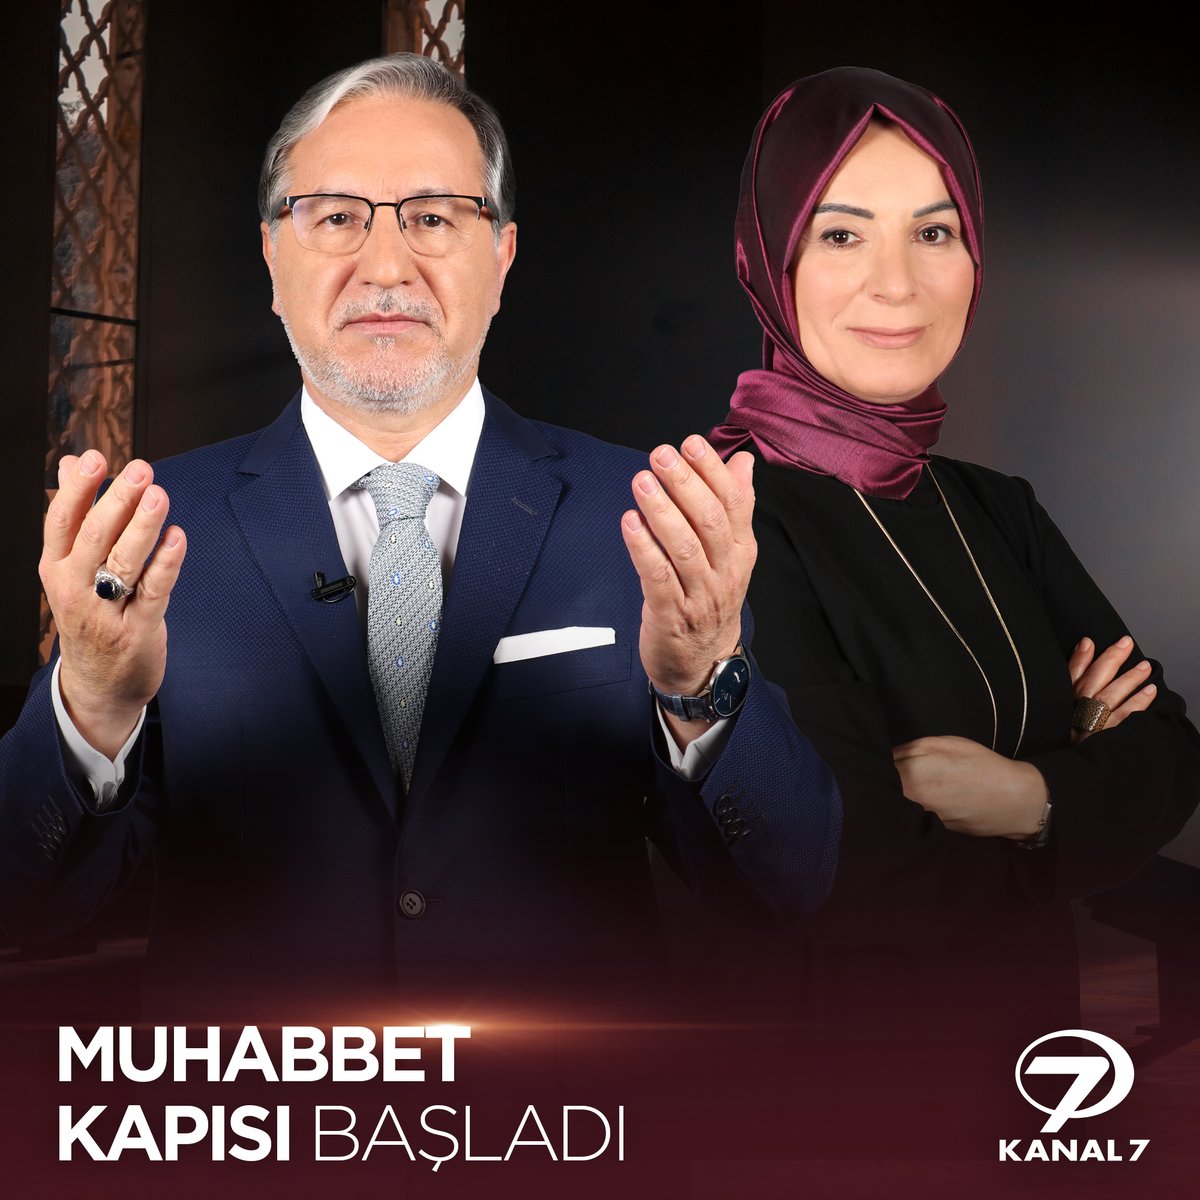 Nursel Tozkoparan'ın sunumuyla, Prof. Dr. Mustafa Karataş'ın anlatımıyla Muhabbet Kapısı şimdi Kanal 7'de! 🤩🤩 #mustafakarataş #MuhabbetKapısı #kanal7